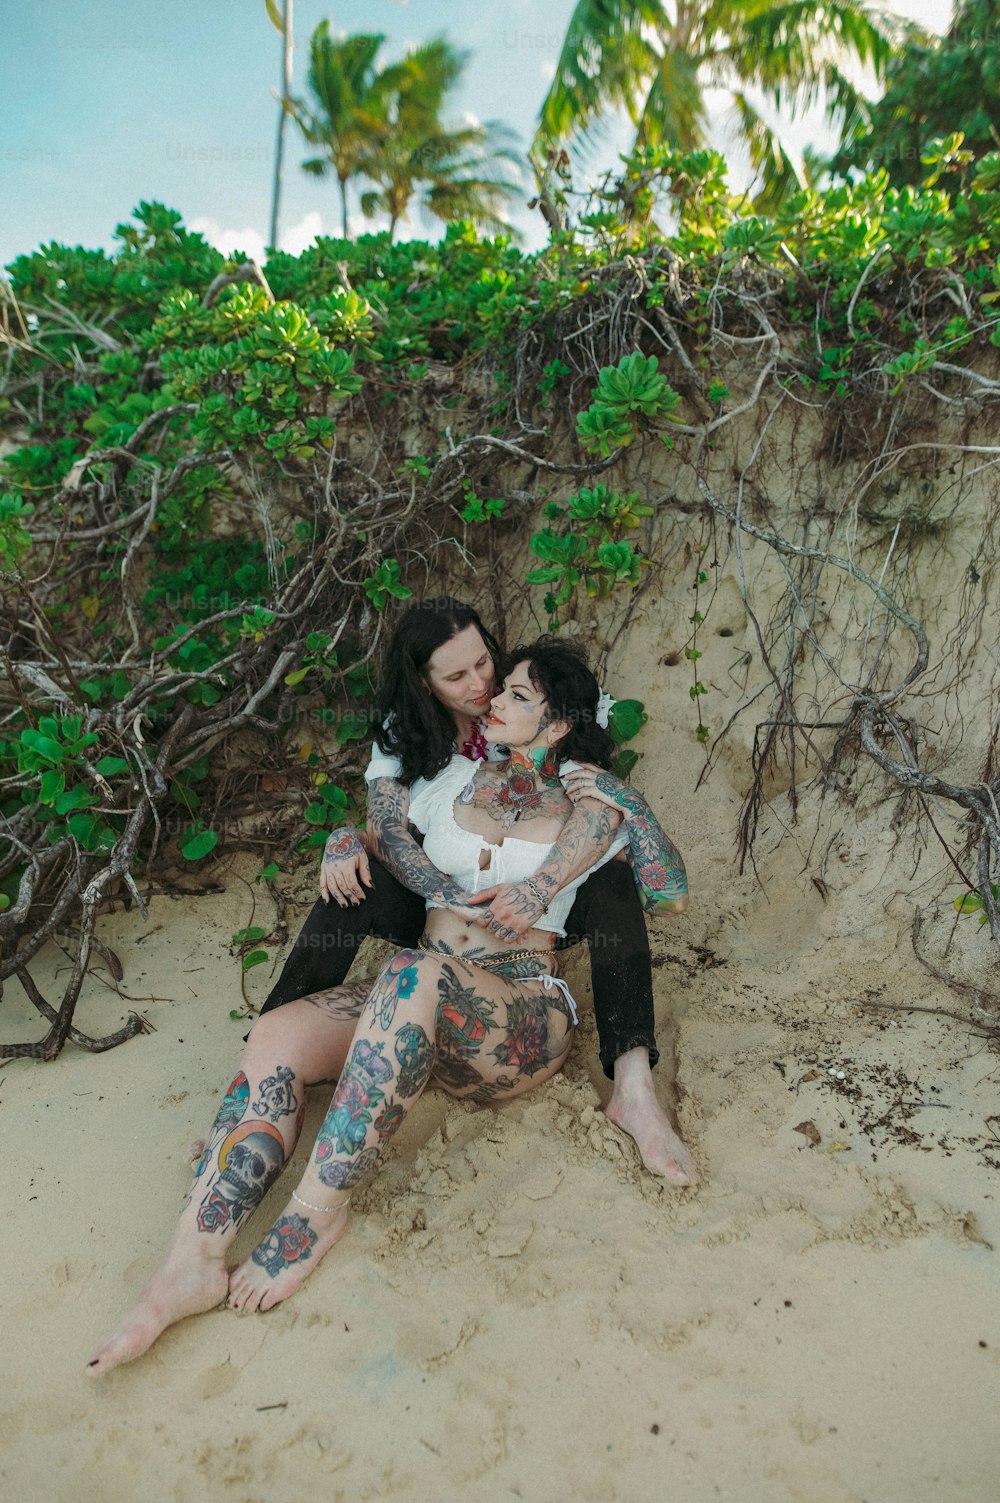 砂浜の上に座っている女性のカップル